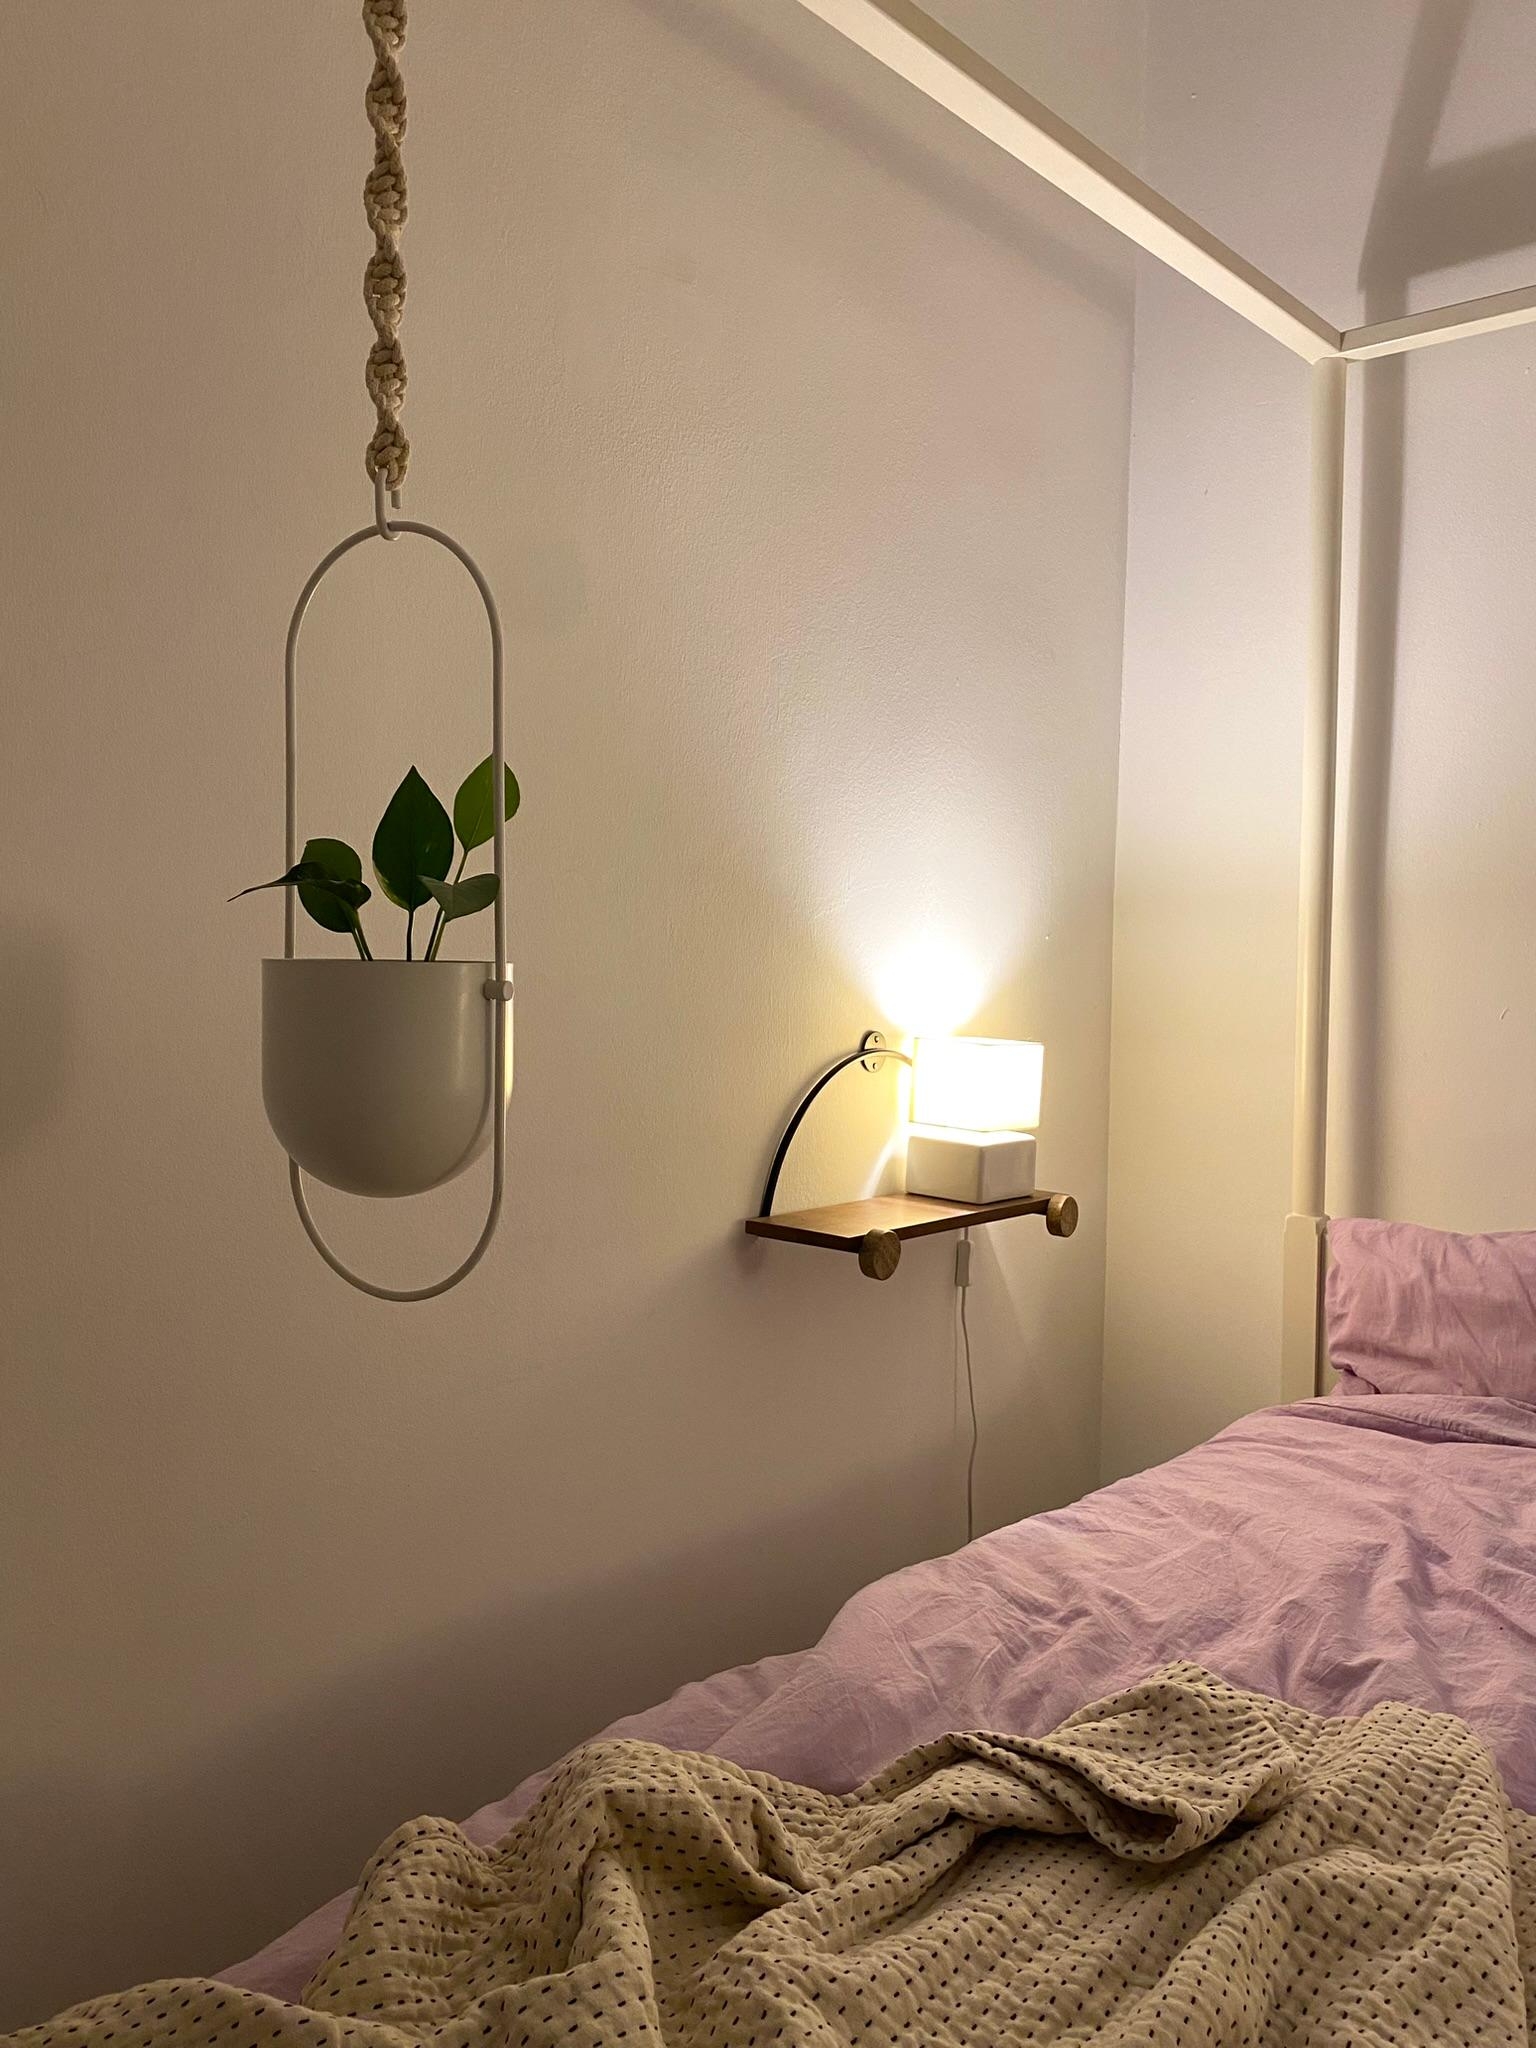 Schlafzimmer Details 💜 
#Schlafzimmer #Bett #Bettwäsche #Pflanze #Lampe #Abendstimmung #Nachttisch #Regal #Makramee